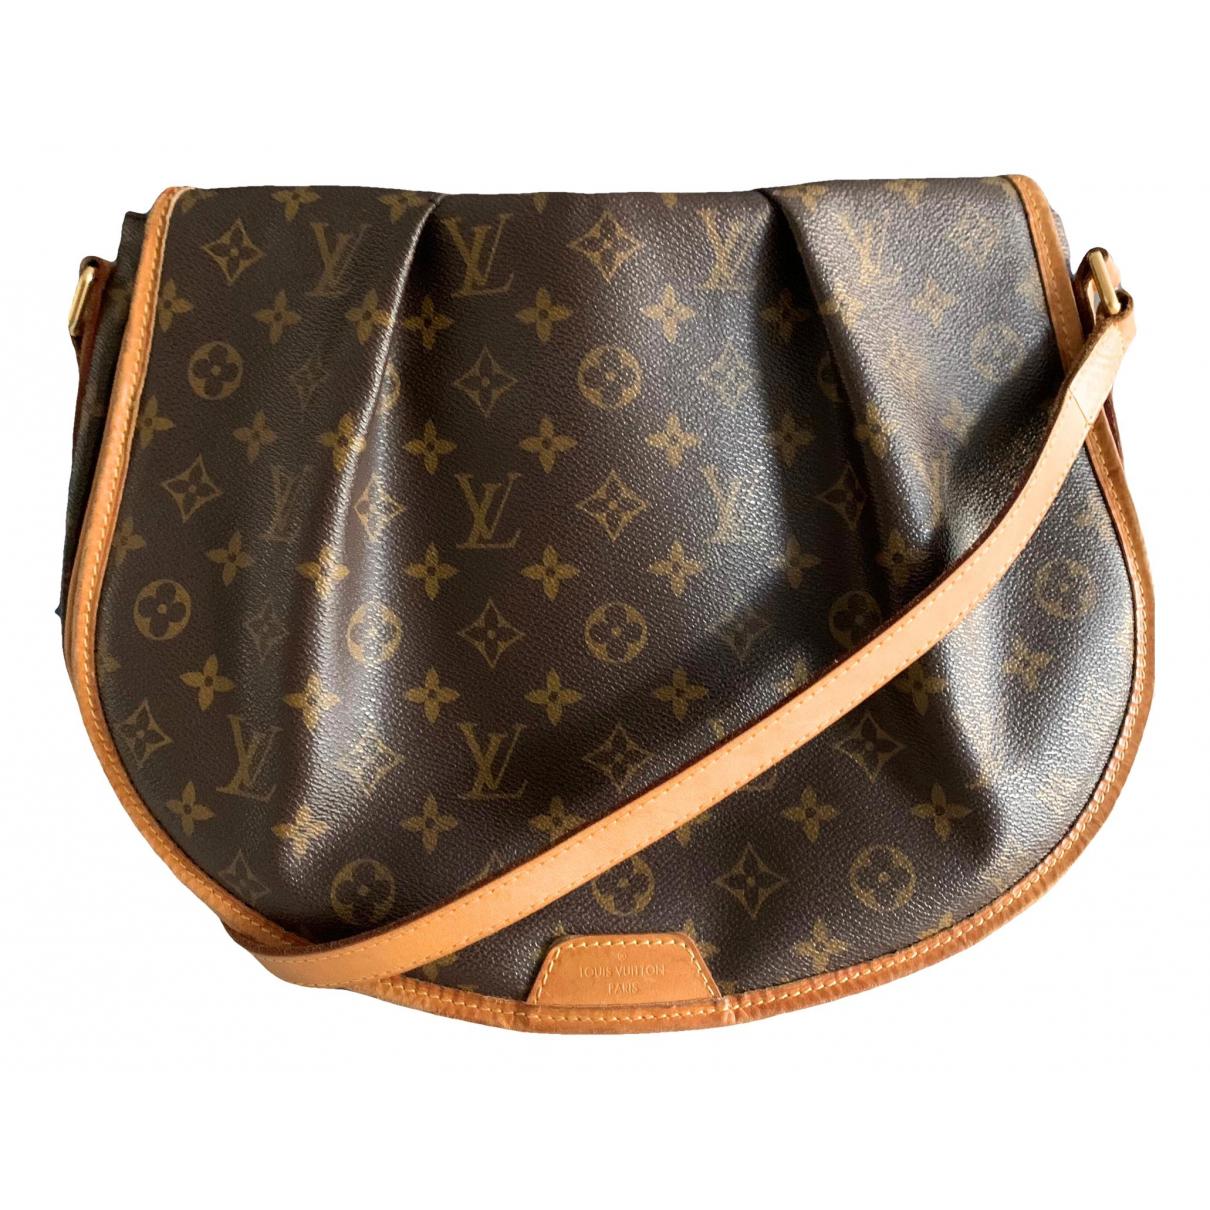 Shopbop Archive Louis Vuitton Monogram Menilmontant Bag